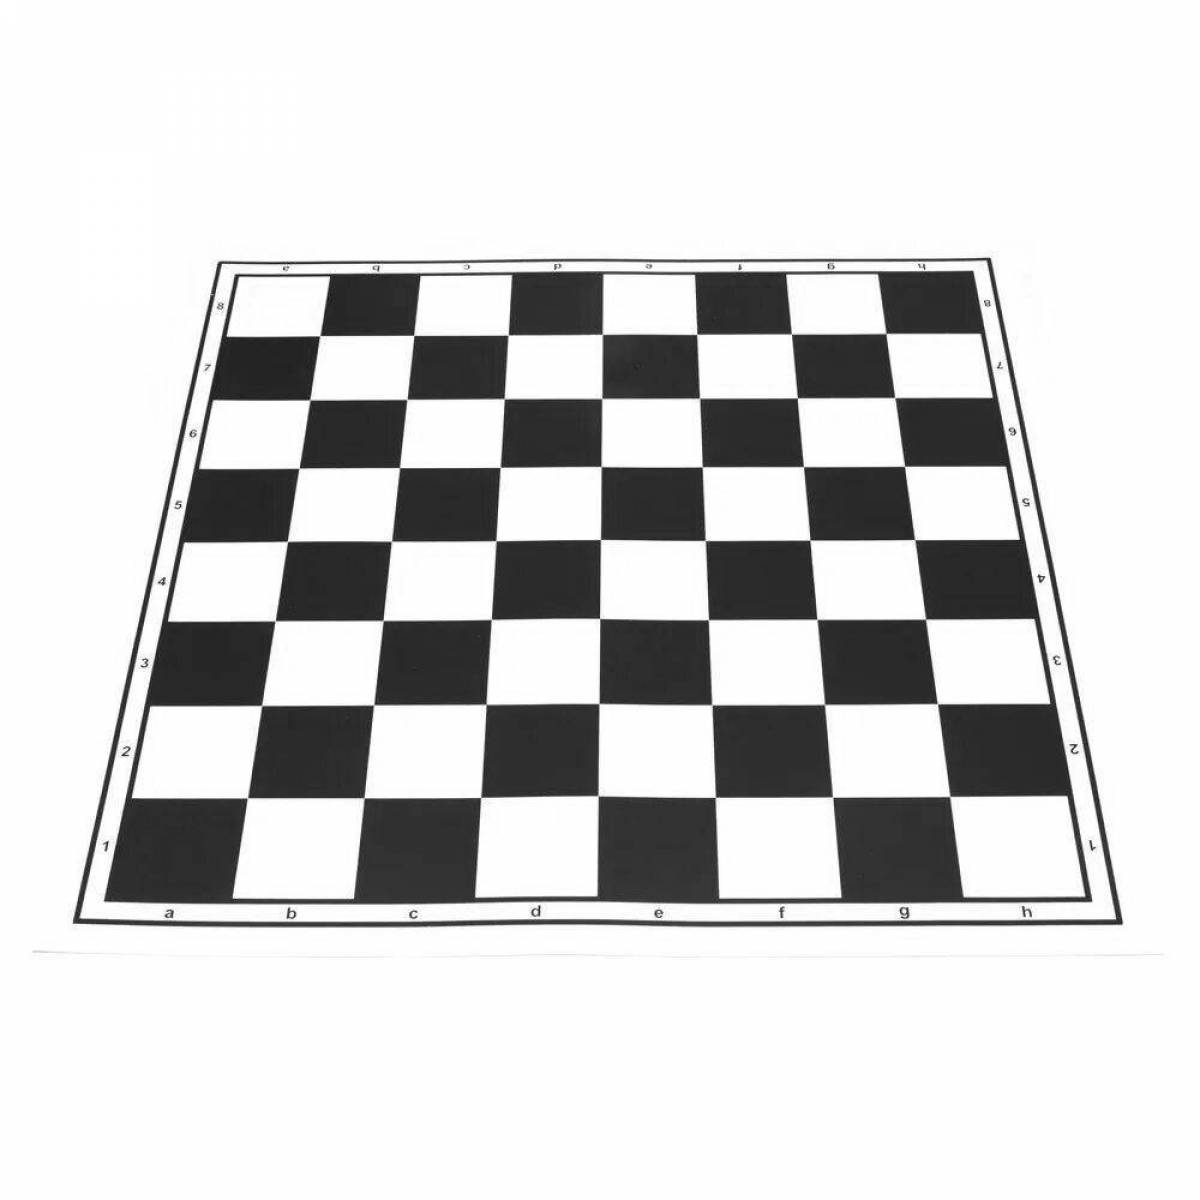 Coloring grandiose chessboard